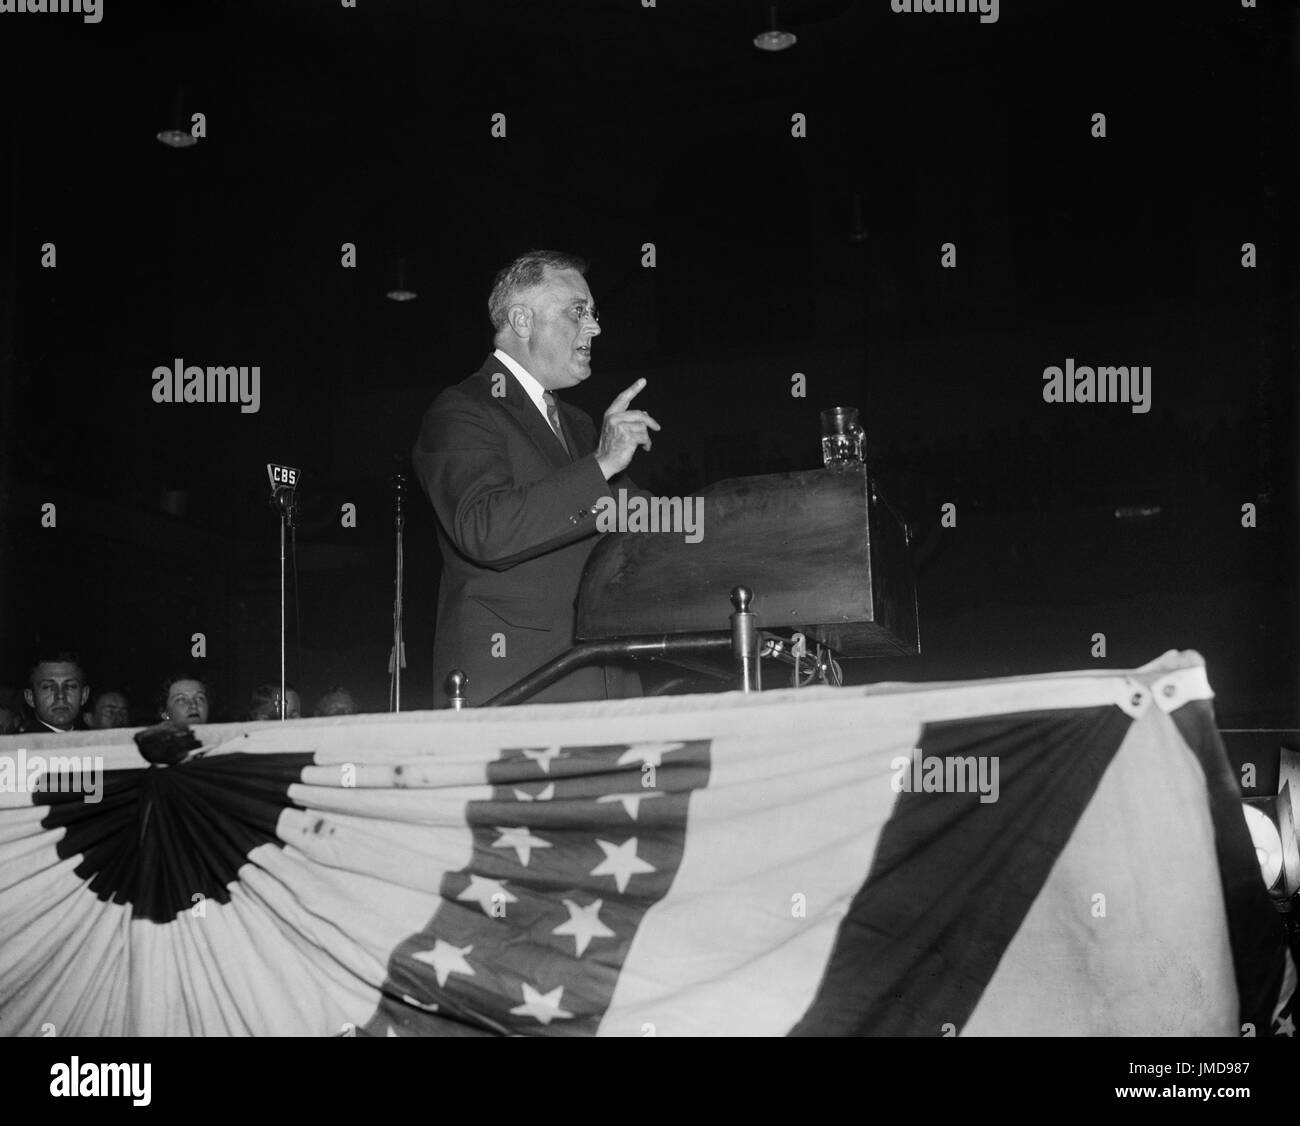 Stati Uniti Il presidente Franklin Roosevelt offrendo discorso di campagna, Baltimore, Maryland, Stati Uniti d'America, Harris & Ewing, 13 aprile 1936 Foto Stock